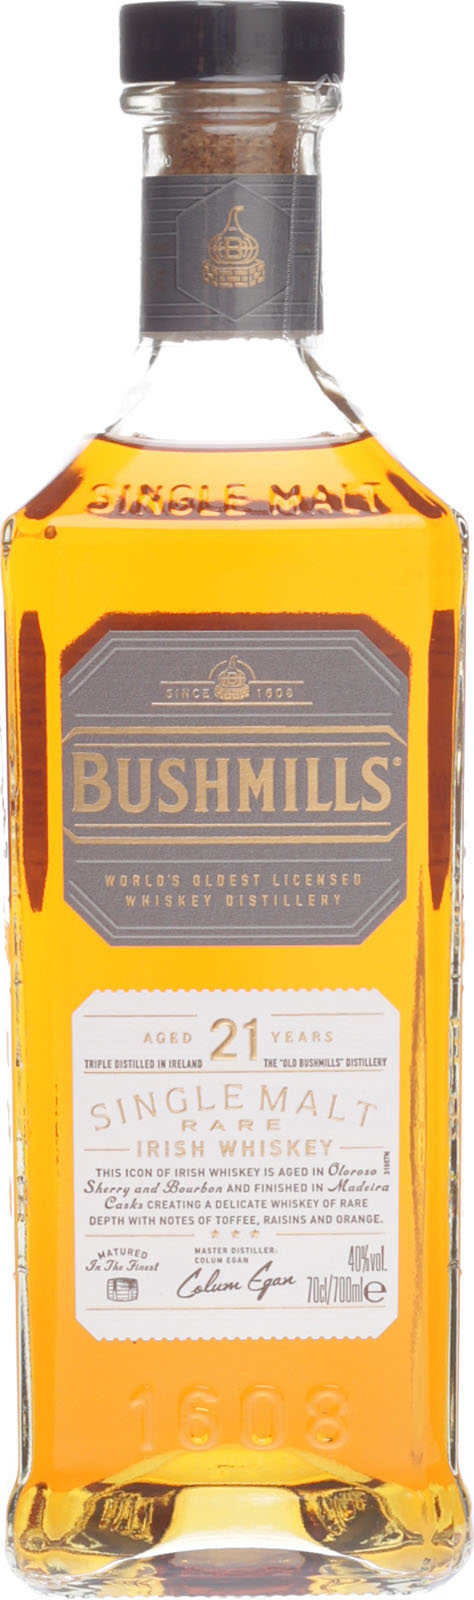 21 günstigen Shop Jahre hier Bushmills Whisky im Irish